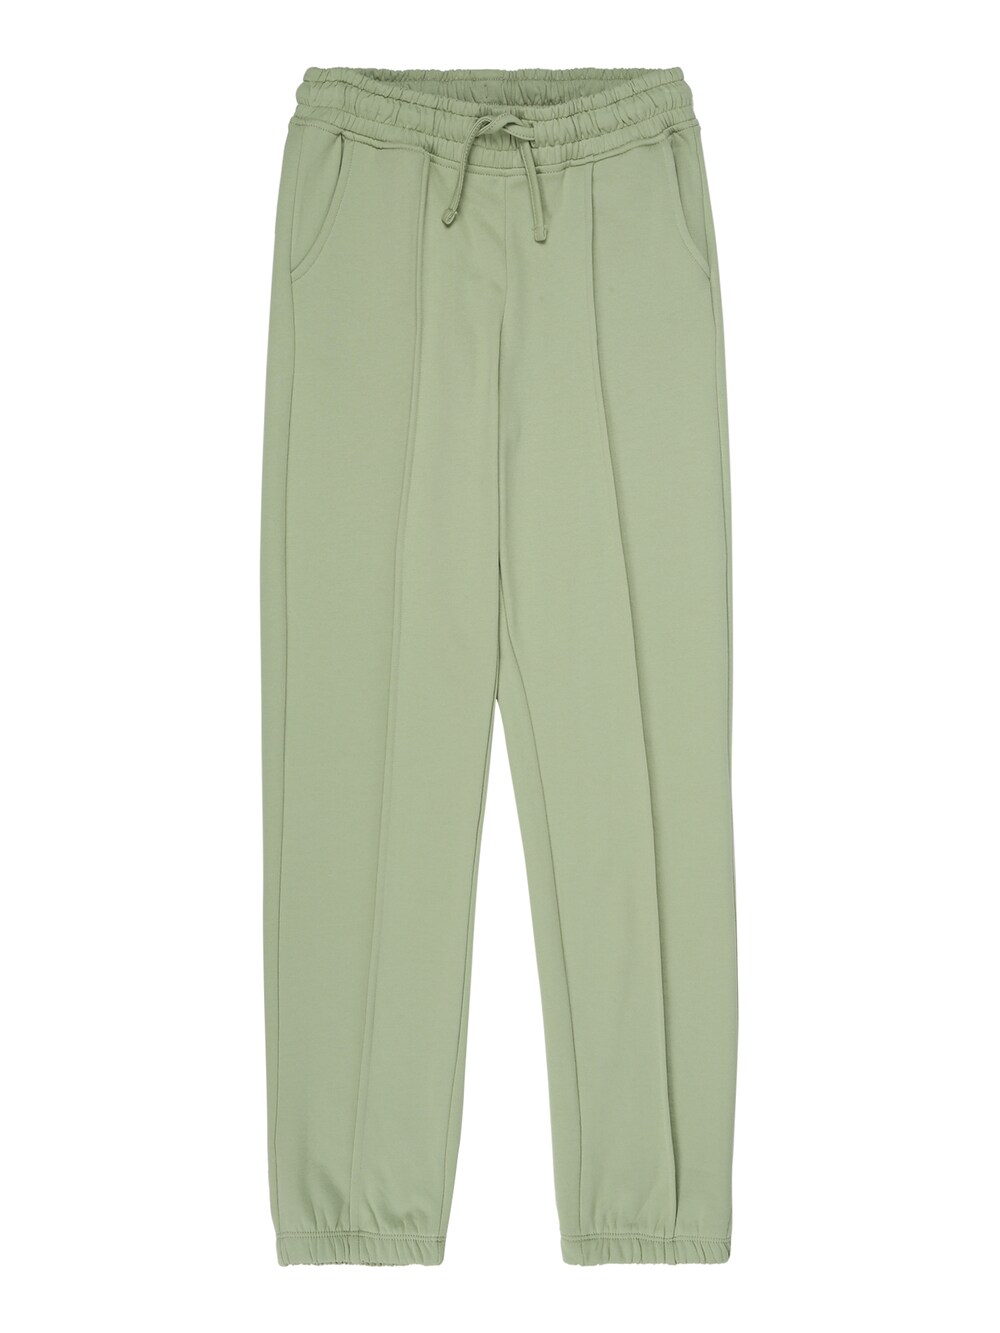 Обычные брюки Vero Moda Girl Octavia, пастельно-зеленый обычные брюки vero moda girl octavia пастельно зеленый